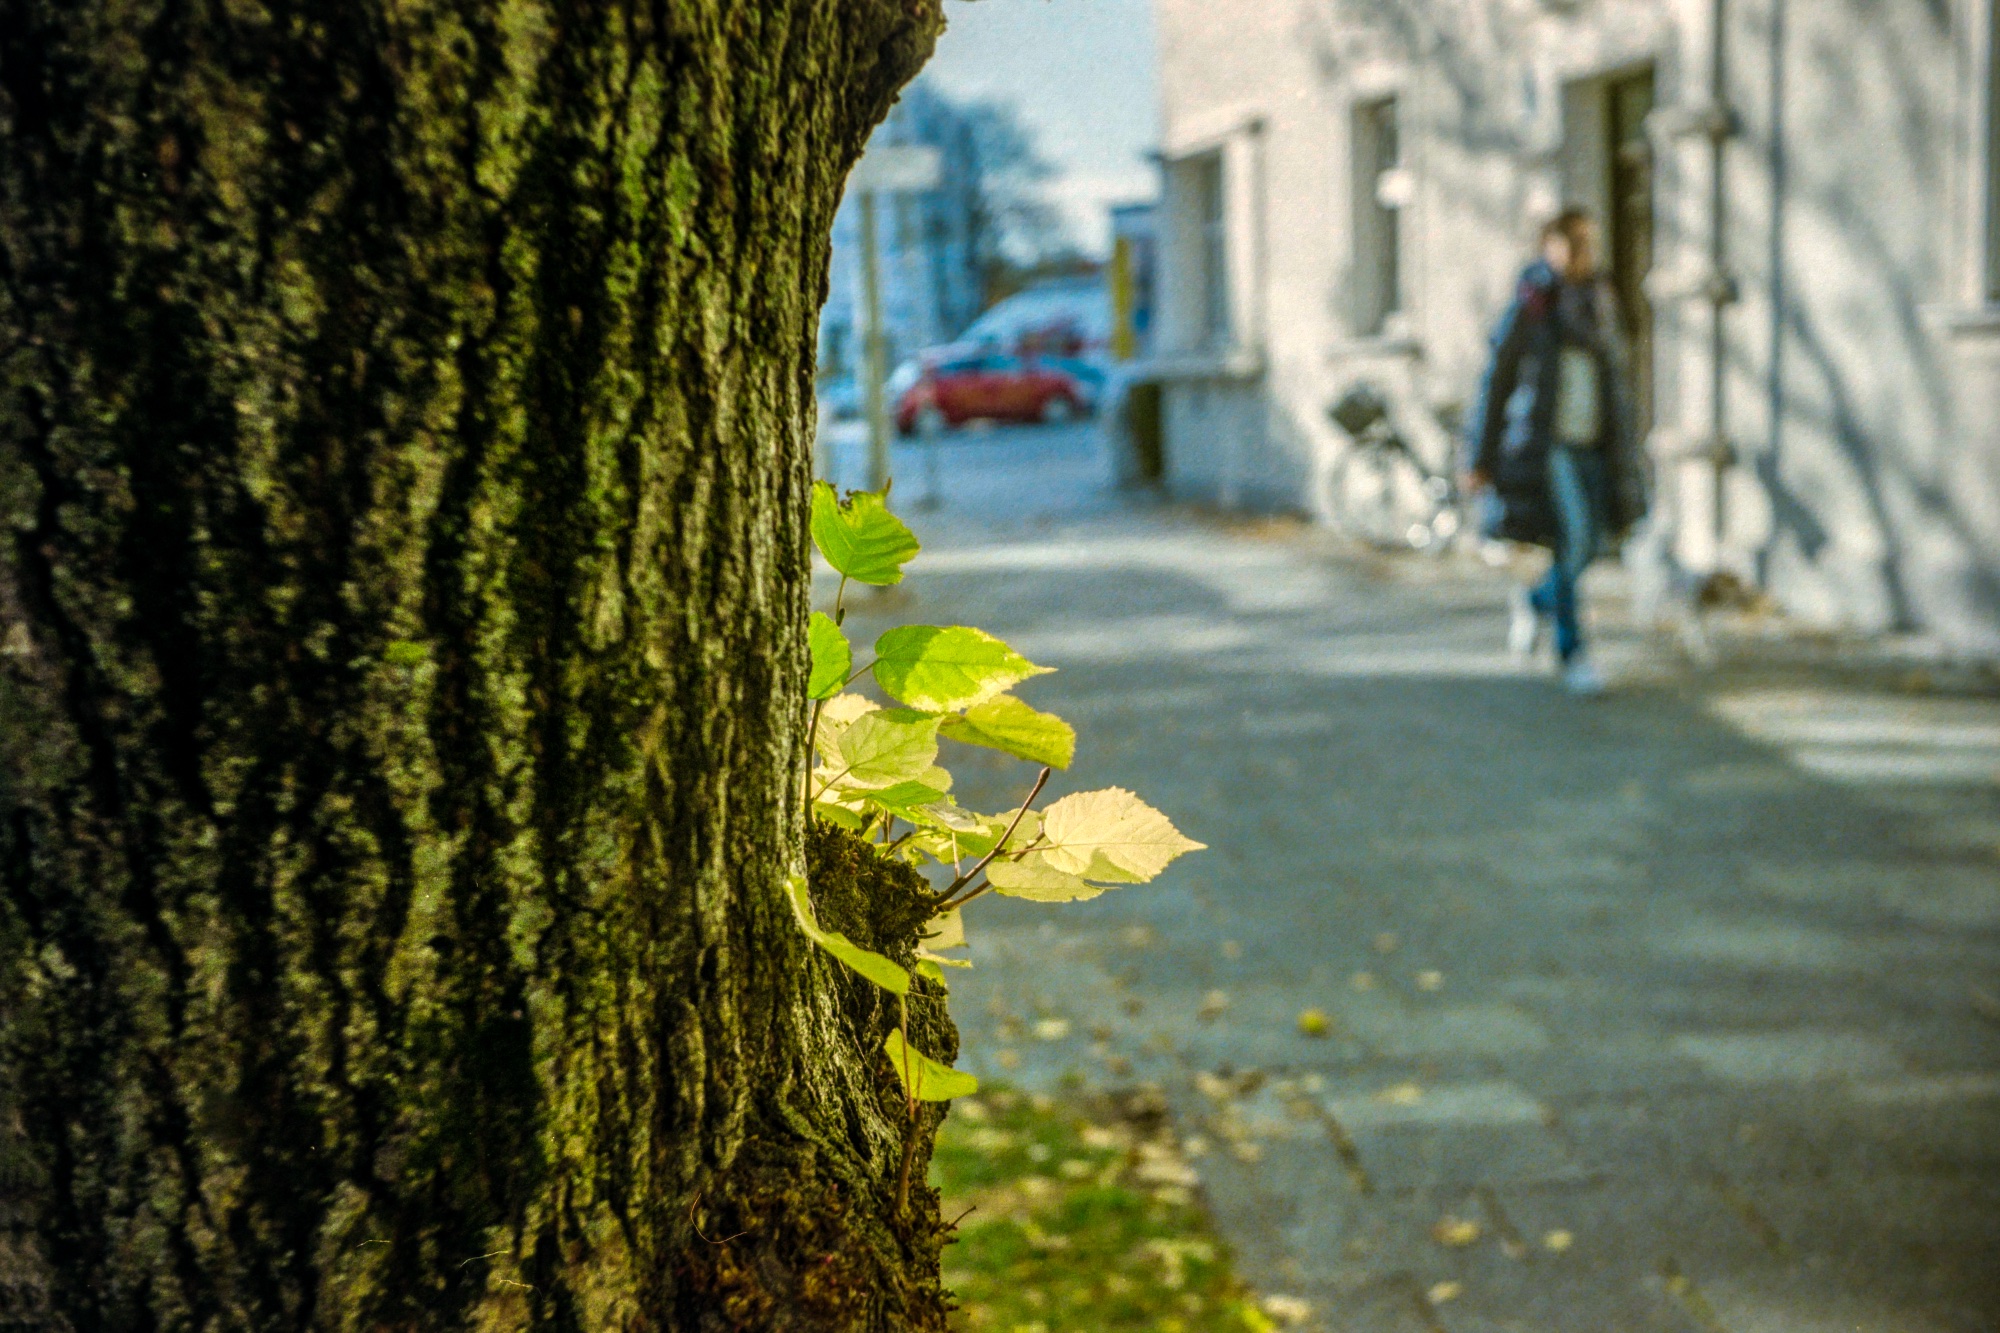 Blätter am Baum - Agfa Flexilette mit Agfa Apotar 1:2.8/45 mm auf Kodak Color Plus 200